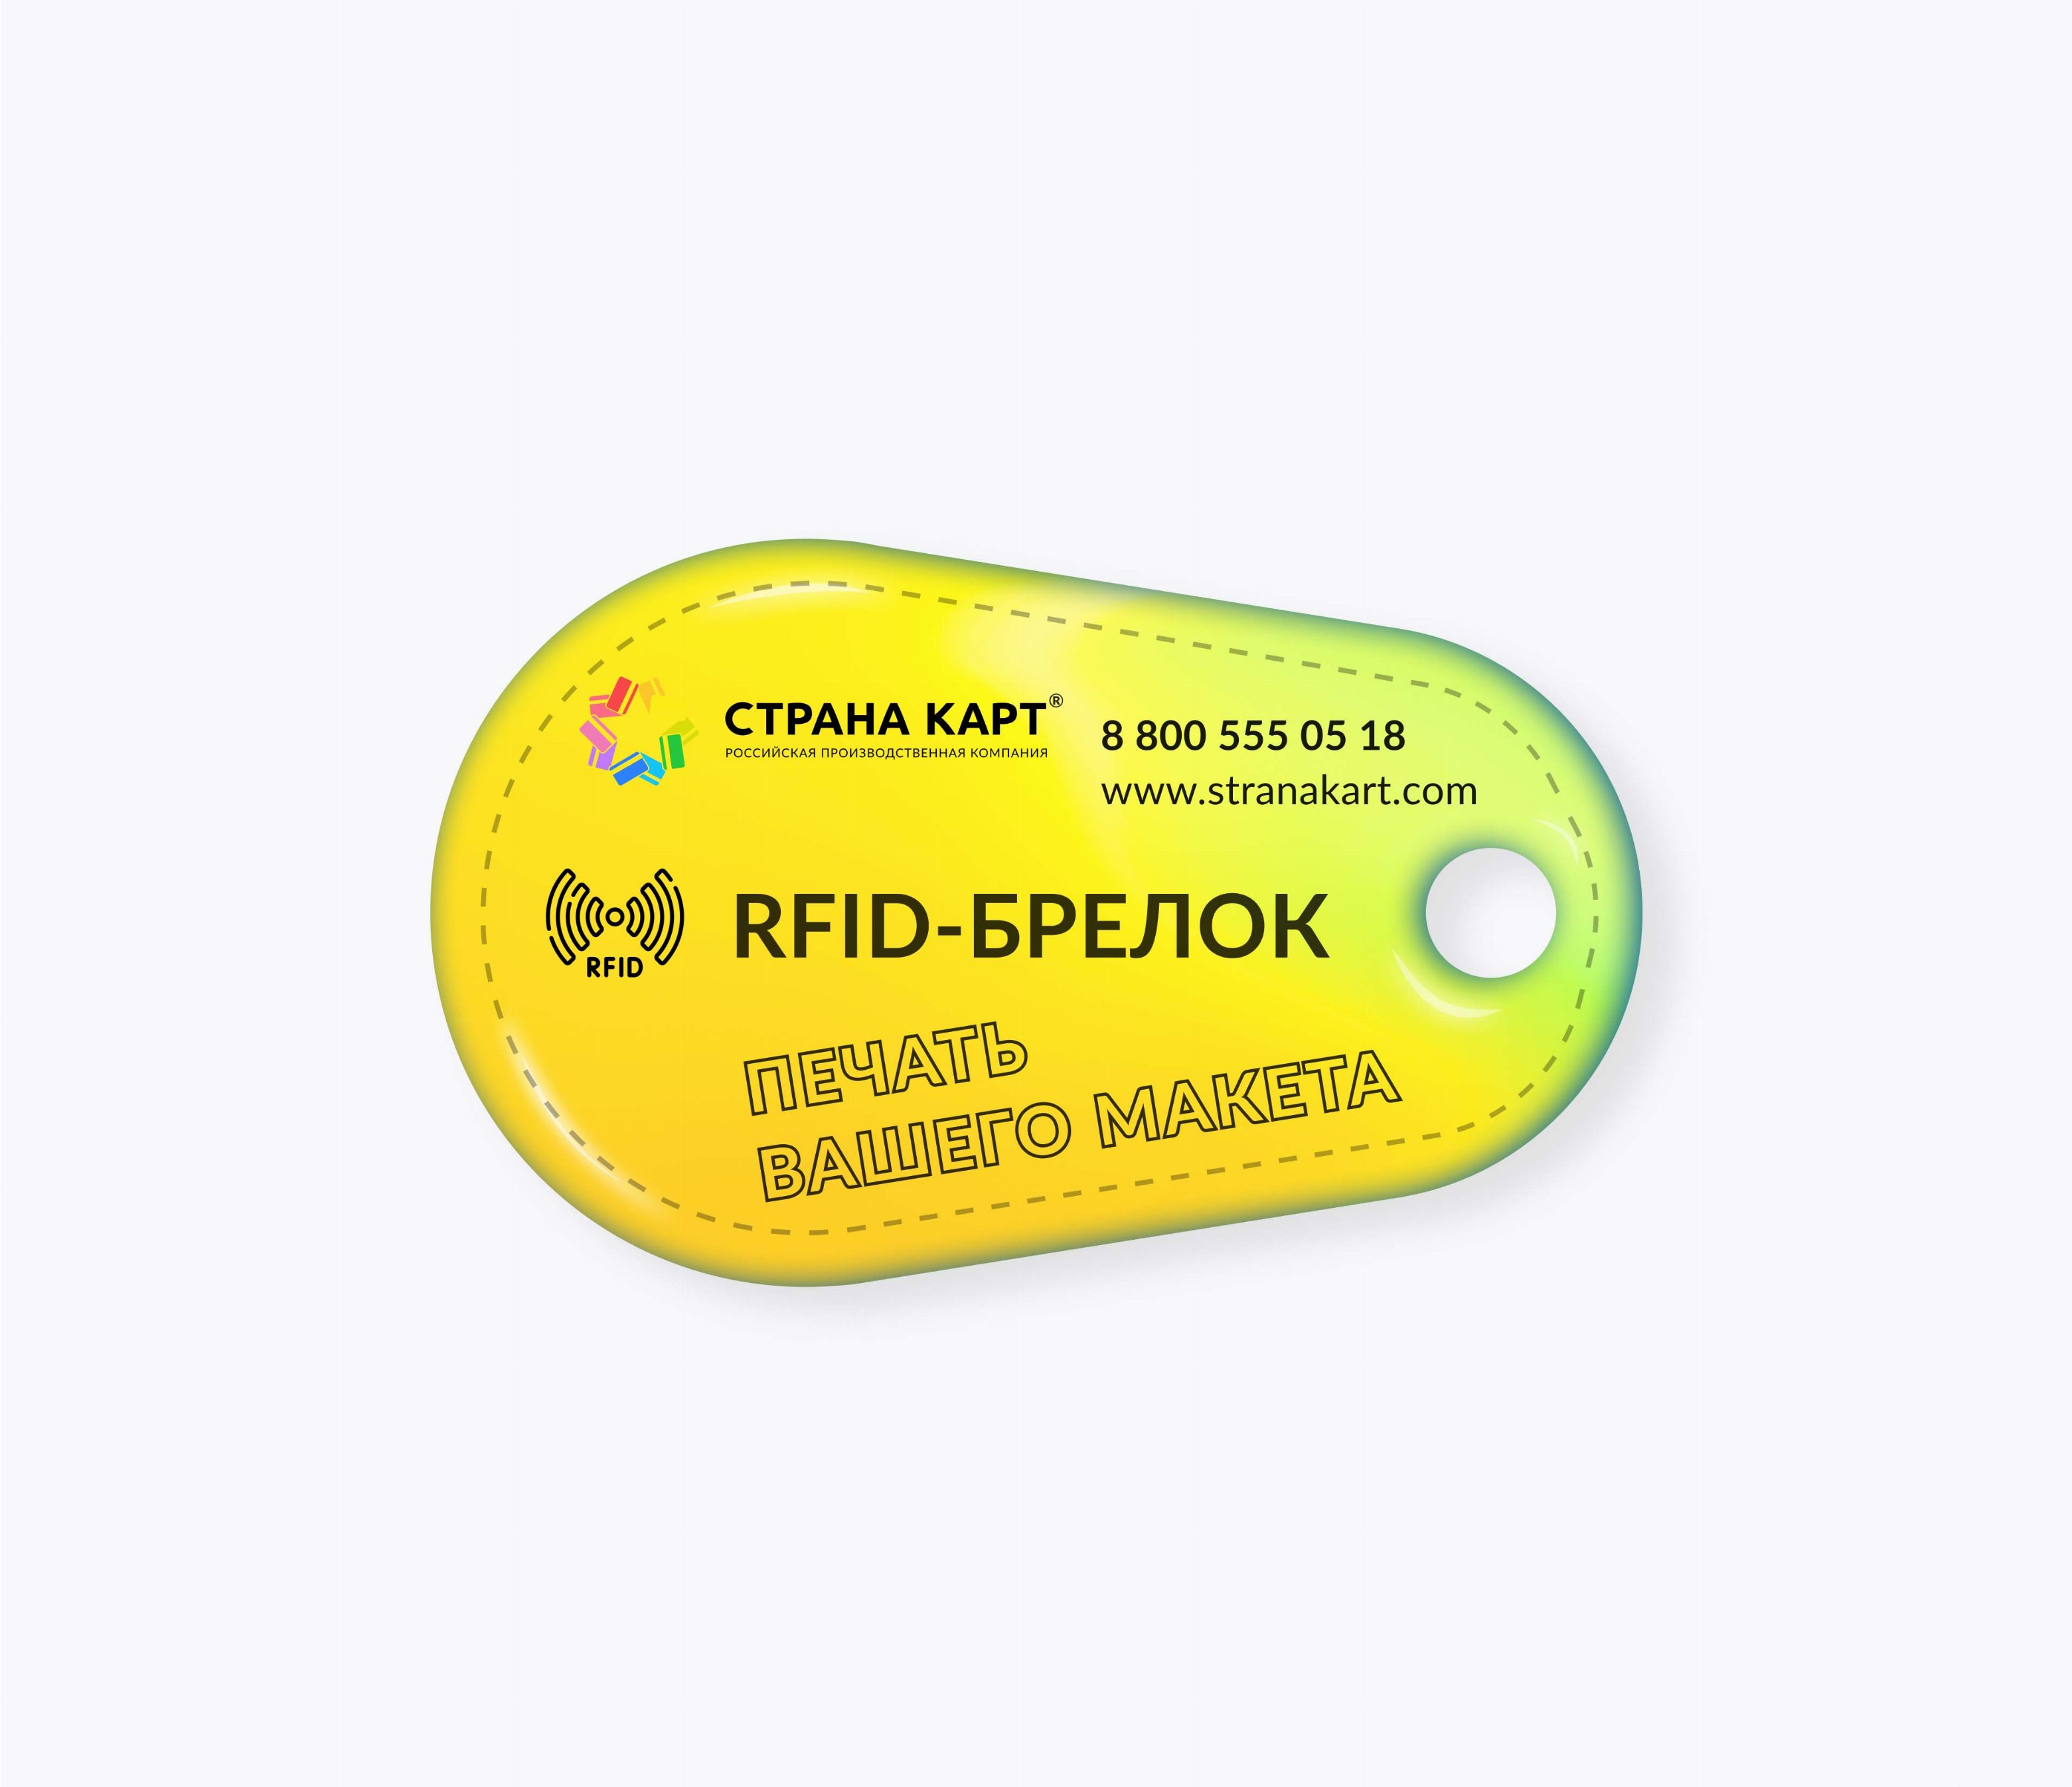 Каплевидные RFID-брелоки NEOKEY® с чипом NXP MIFARE Plus X 2k 7 byte UID RFID-брелоки NEOKEY® с чипом NXP MIFARE Plus X 2k 7 byte UID и вашим логотипом